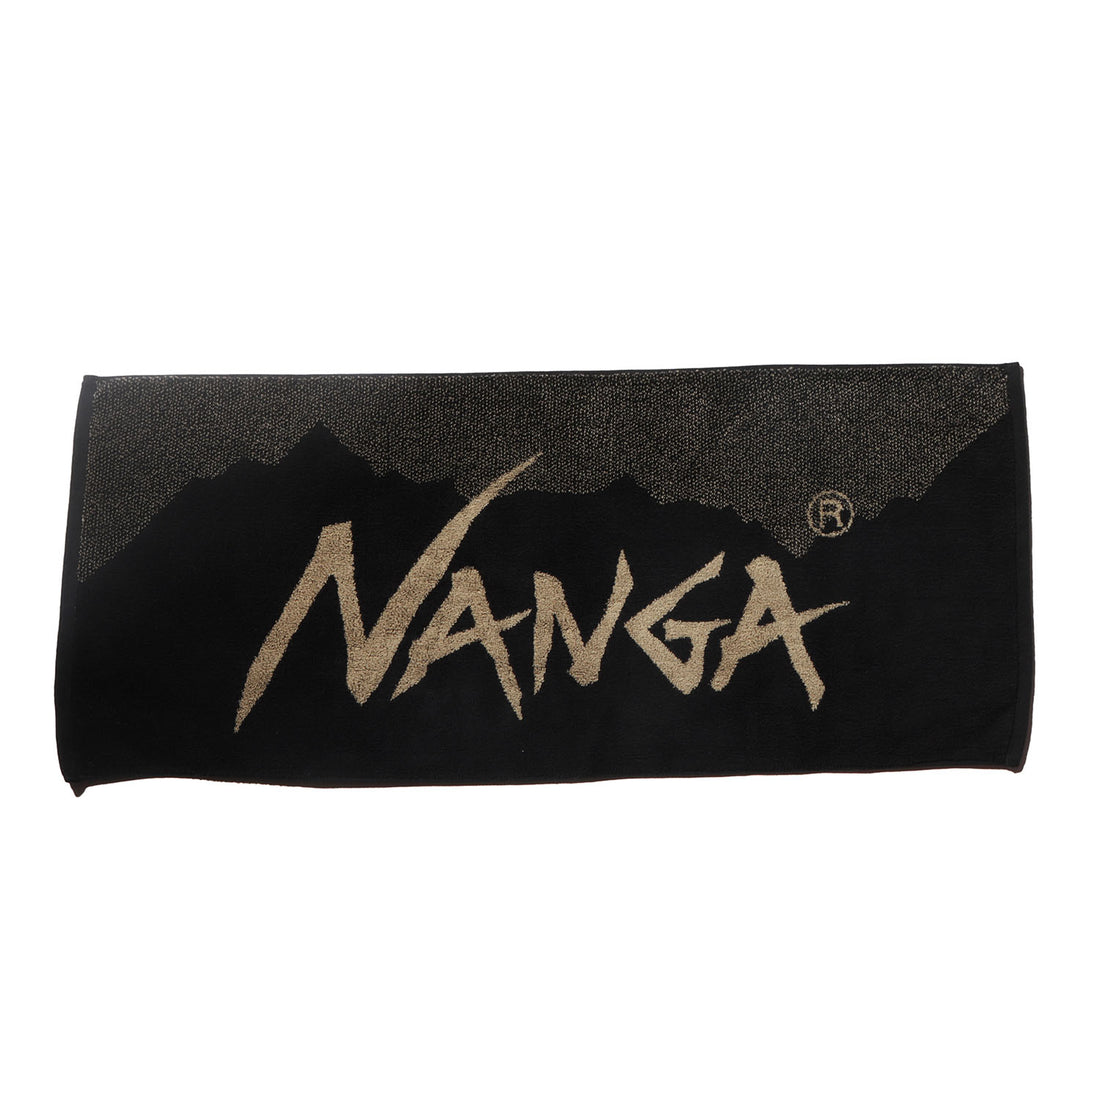 NANGA LOGO FACE TOWEL / ナンガロゴフェイスタオル (6779245822126)